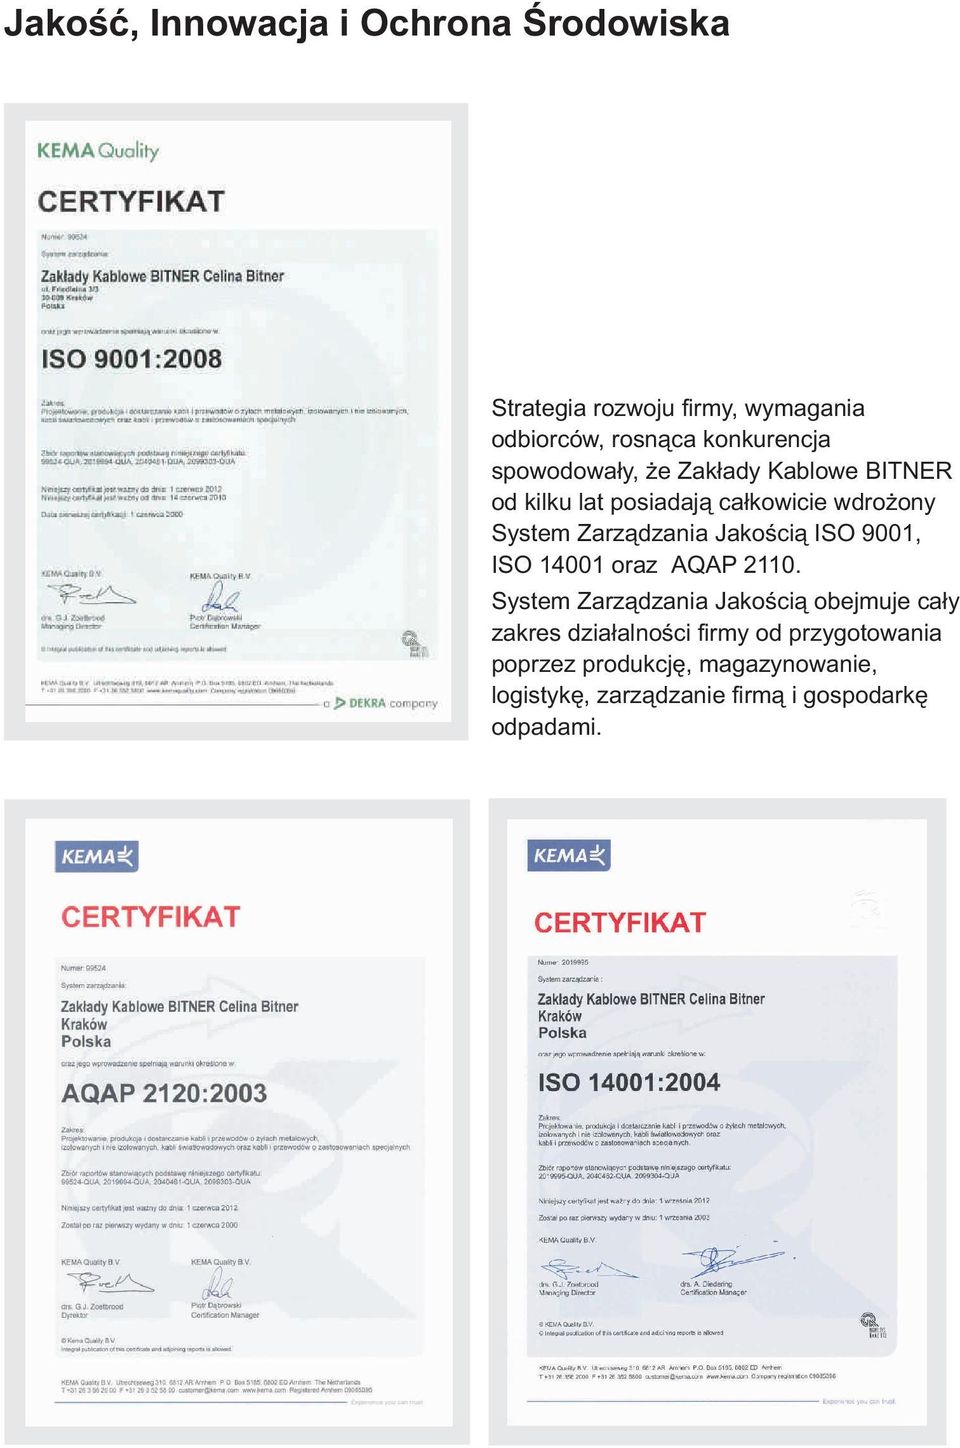 Jakością ISO 9001, ISO 14001 oraz AQAP 110.